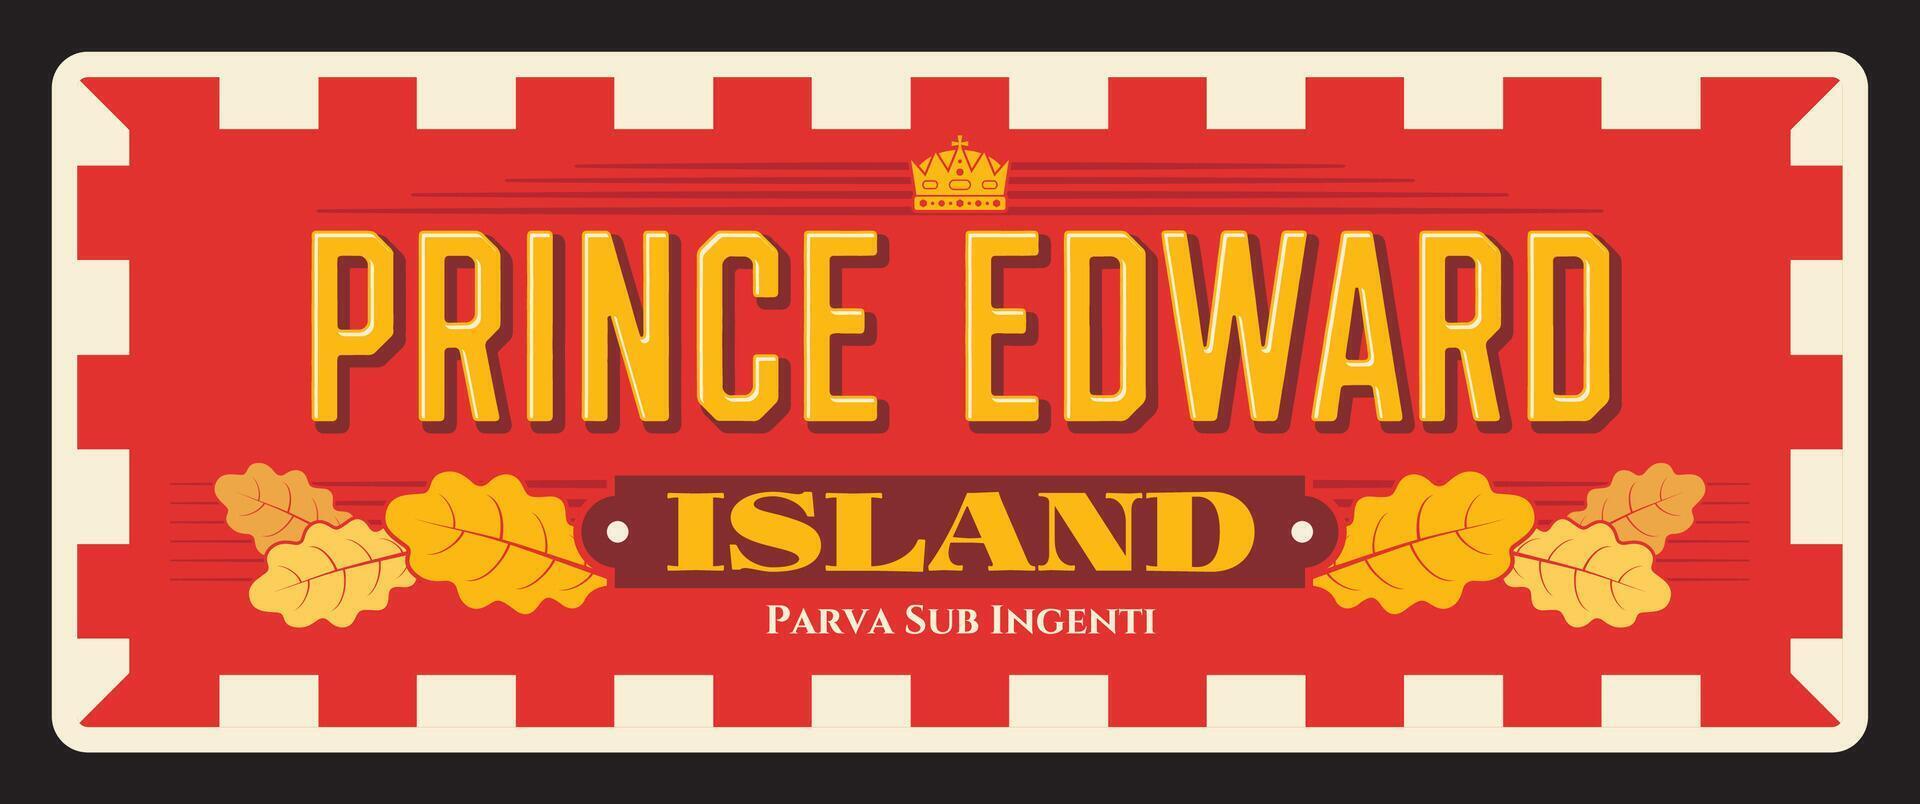 prins edward eiland, Canadees provincie bord vector